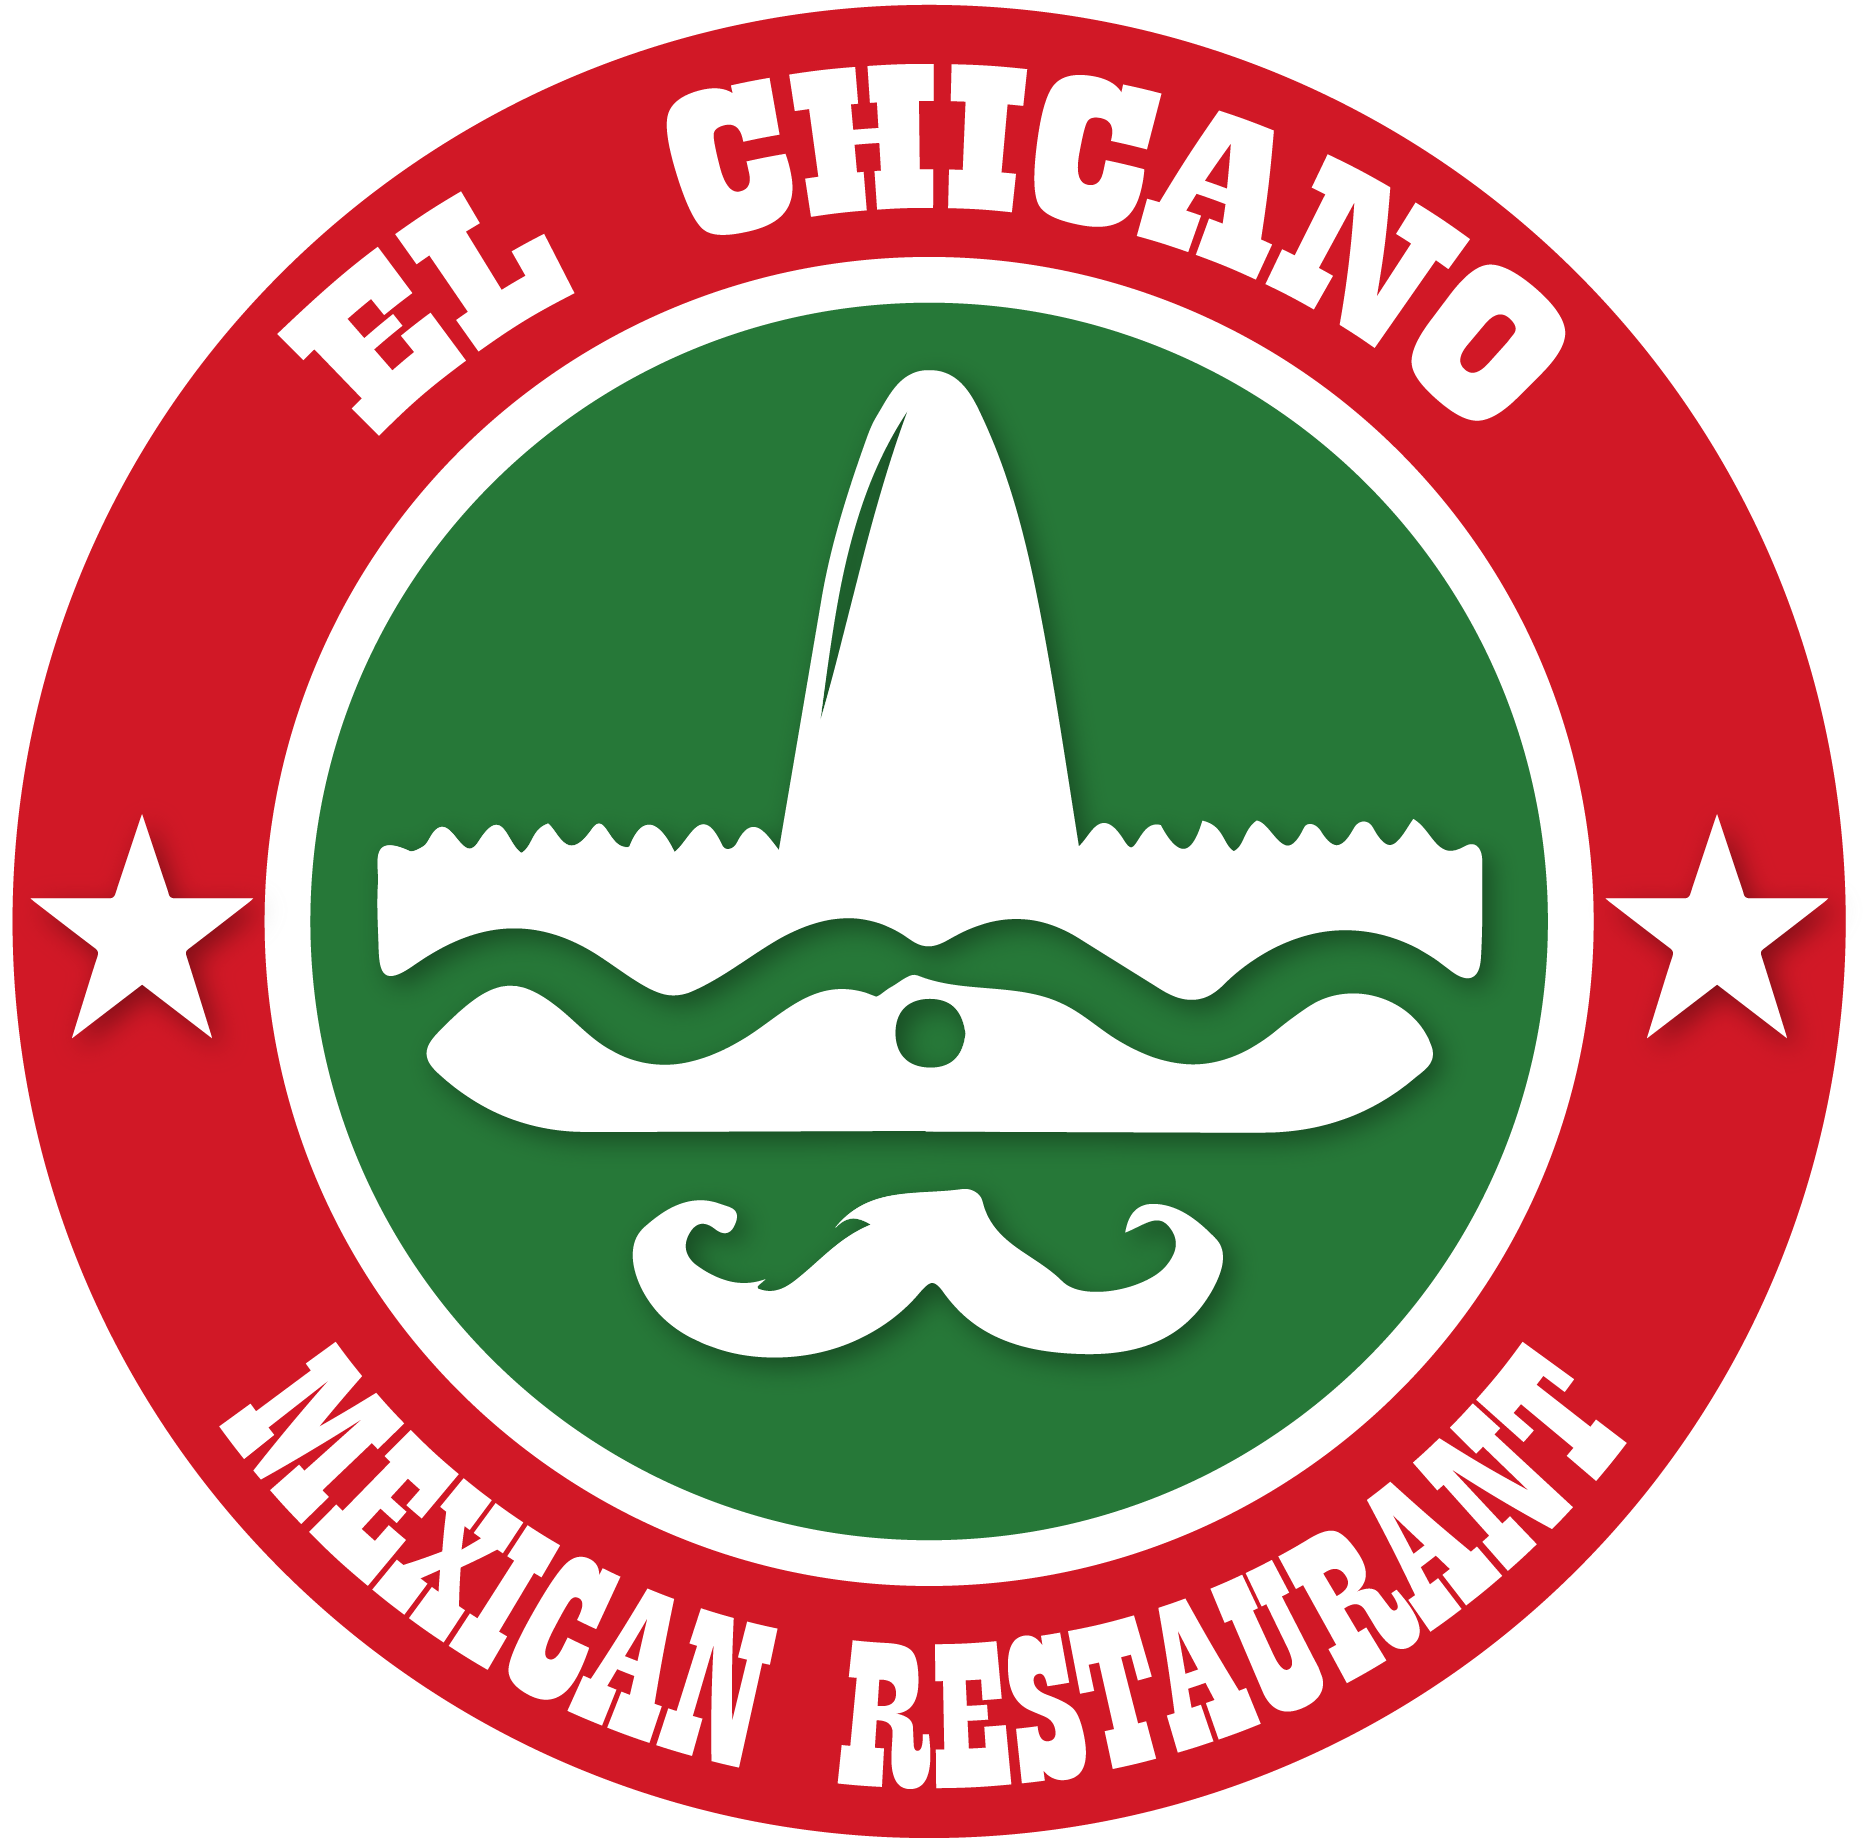 El Chicano – Mexican Restaurant